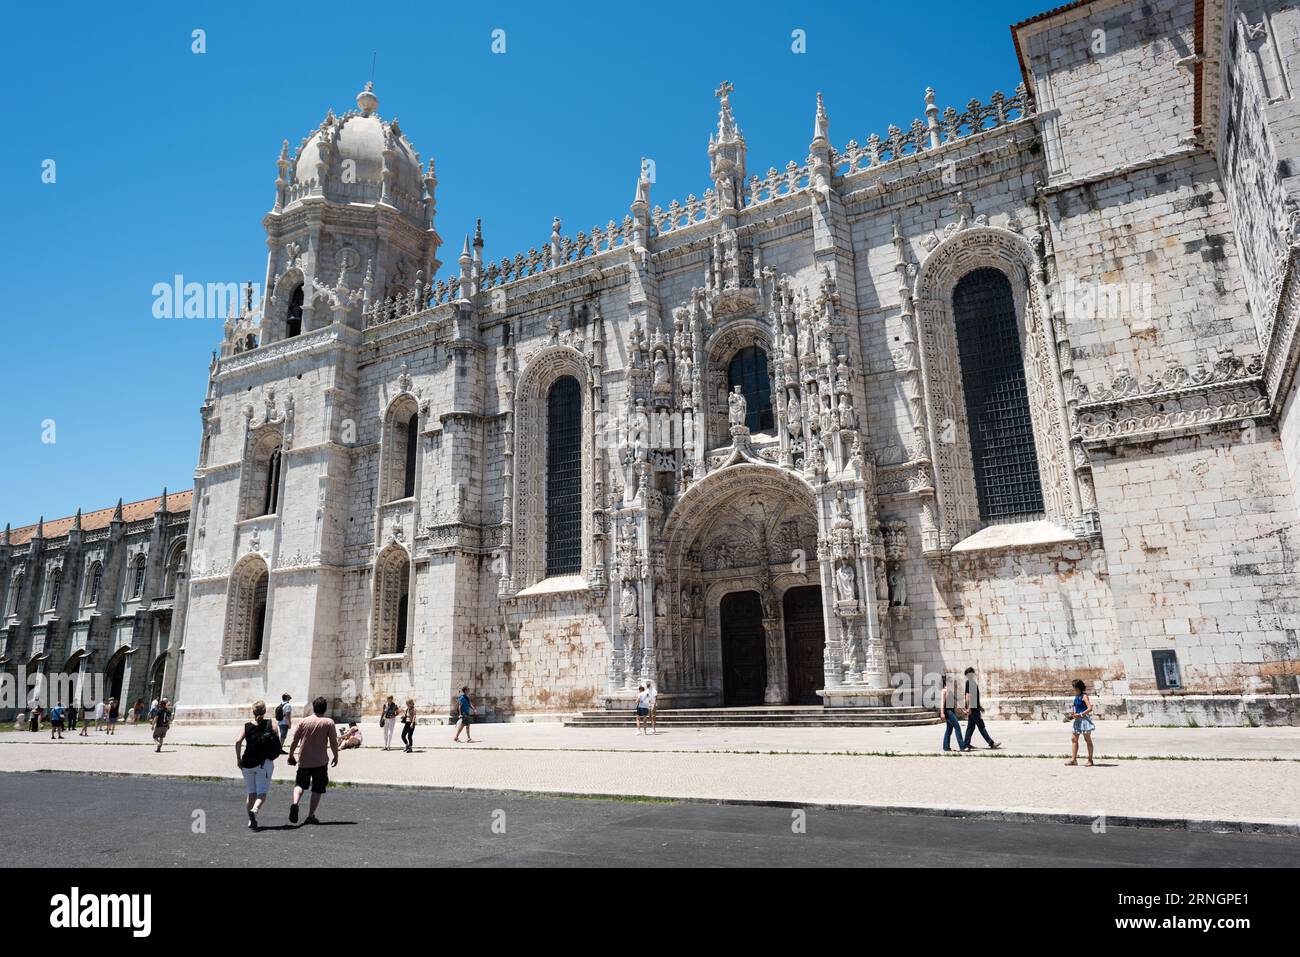 BELEM, Lissabon, Portugal – Mosteiro dos Jeronimos, ein herausragendes architektonisches Wunder in Belem, steht als ikonische Darstellung des manuelinischen Stils. Dieses UNESCO-Weltkulturerbe mit seinen kunstvollen Details und seiner historischen Bedeutung unterstreicht Portugals Erbe der Erkundung. Stockfoto